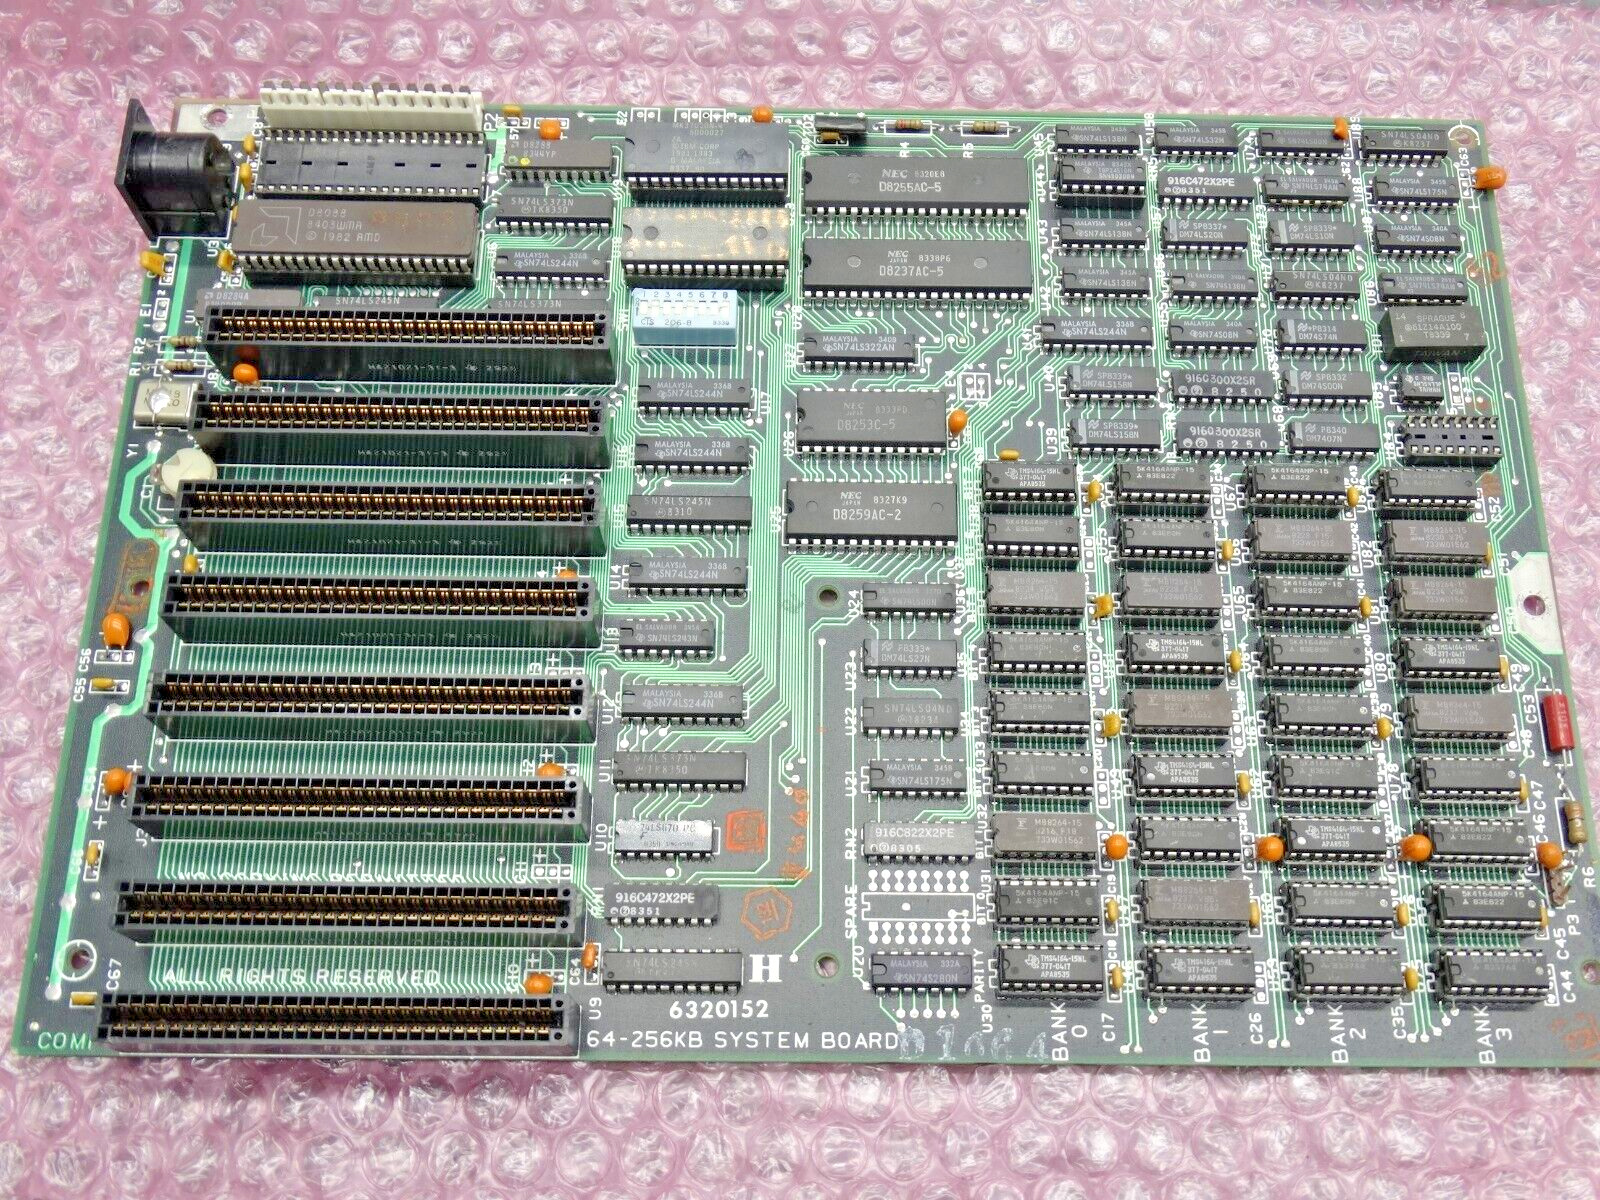 IBM Vintage Motherboard 64-256KB System Board 6320152